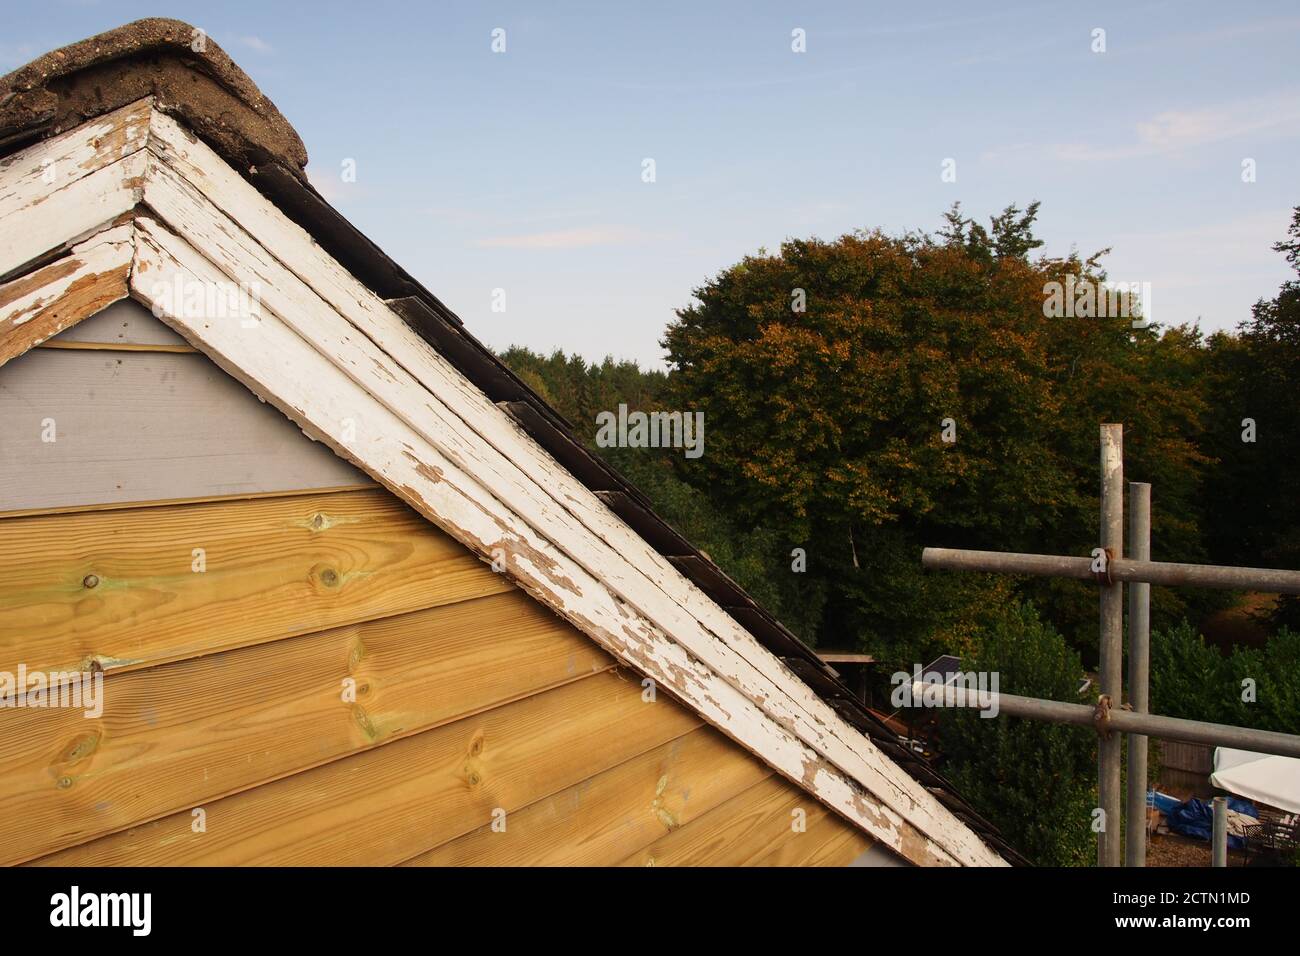 Blick vom Gerüst auf das reparierte Giebelende eines alten Holzhauses mit Schieferdach, das noch lackiert werden muss, plus alte Lastkahn-Bretter Stockfoto